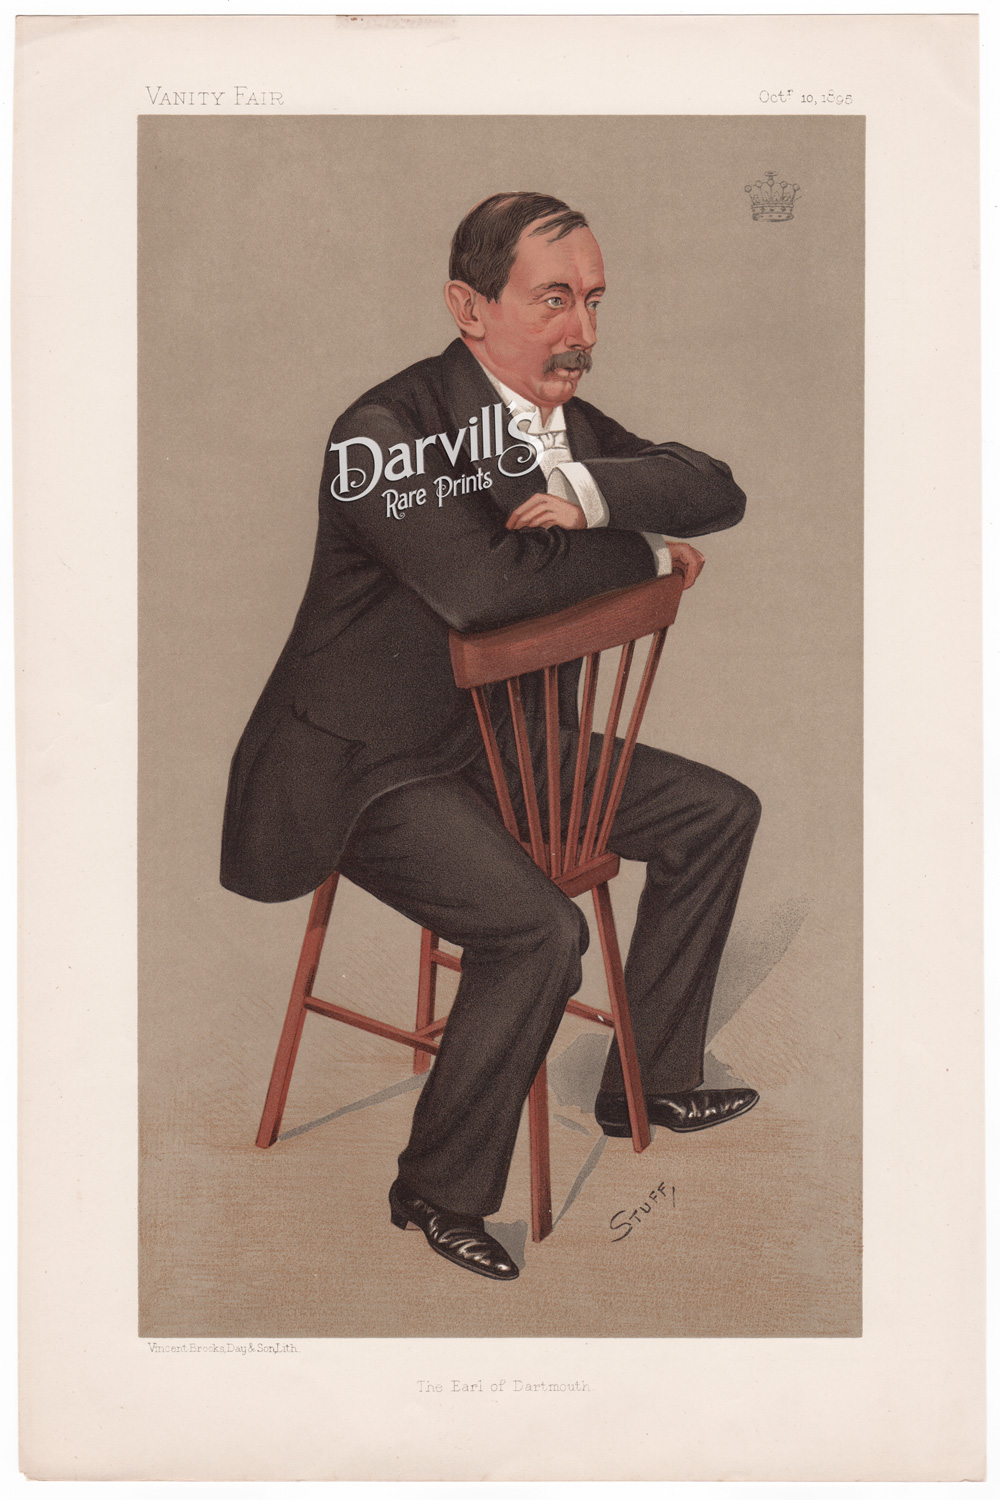 The Earl of Dartmouth
[William Heneage Legge] 
Oct. 10, 1895